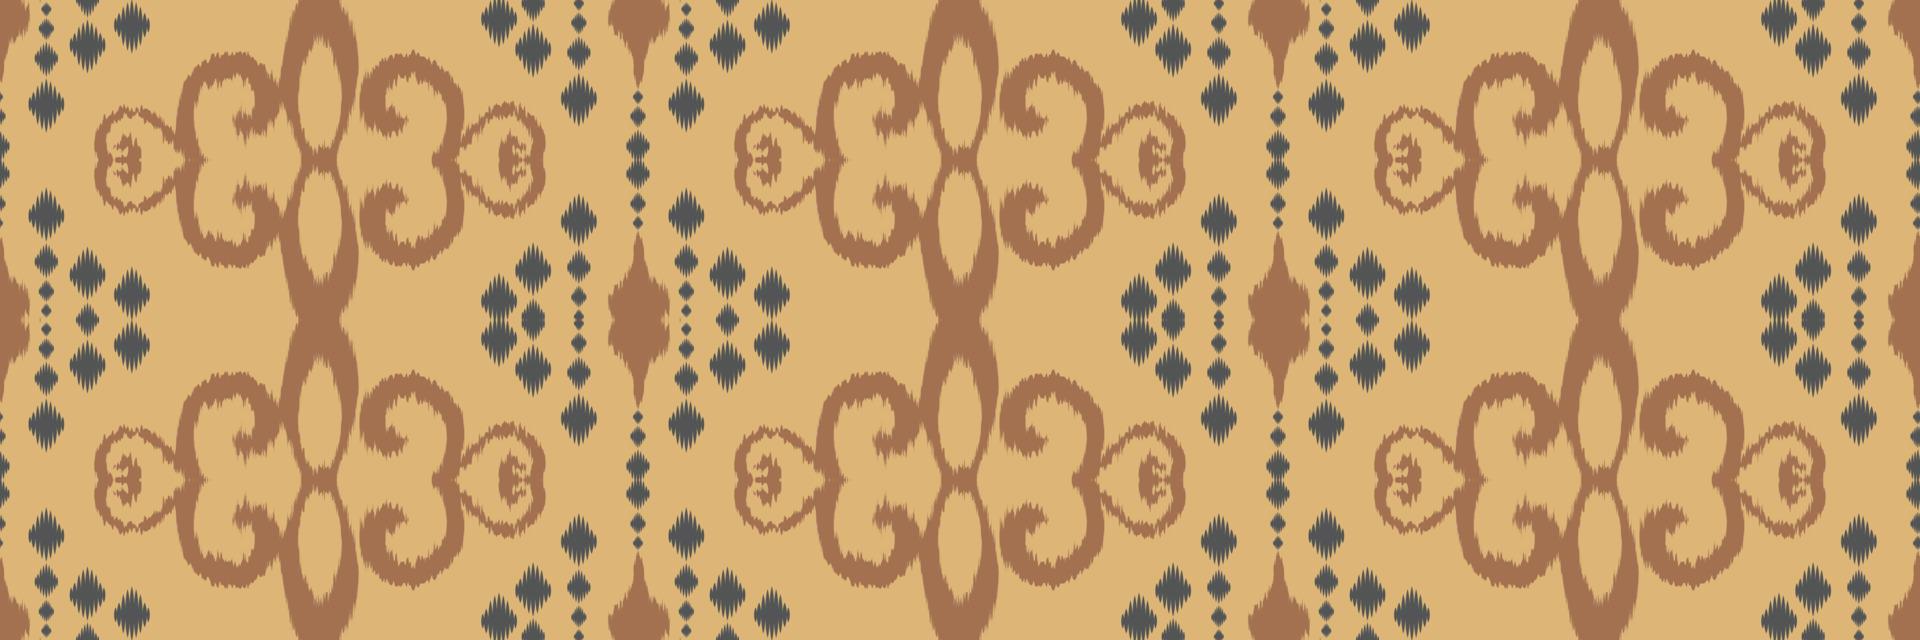 motivo têxtil batik listras ikat padrão sem costura design de vetor digital para impressão saree kurti borneo tecido borda escova símbolos amostras roupas de festa